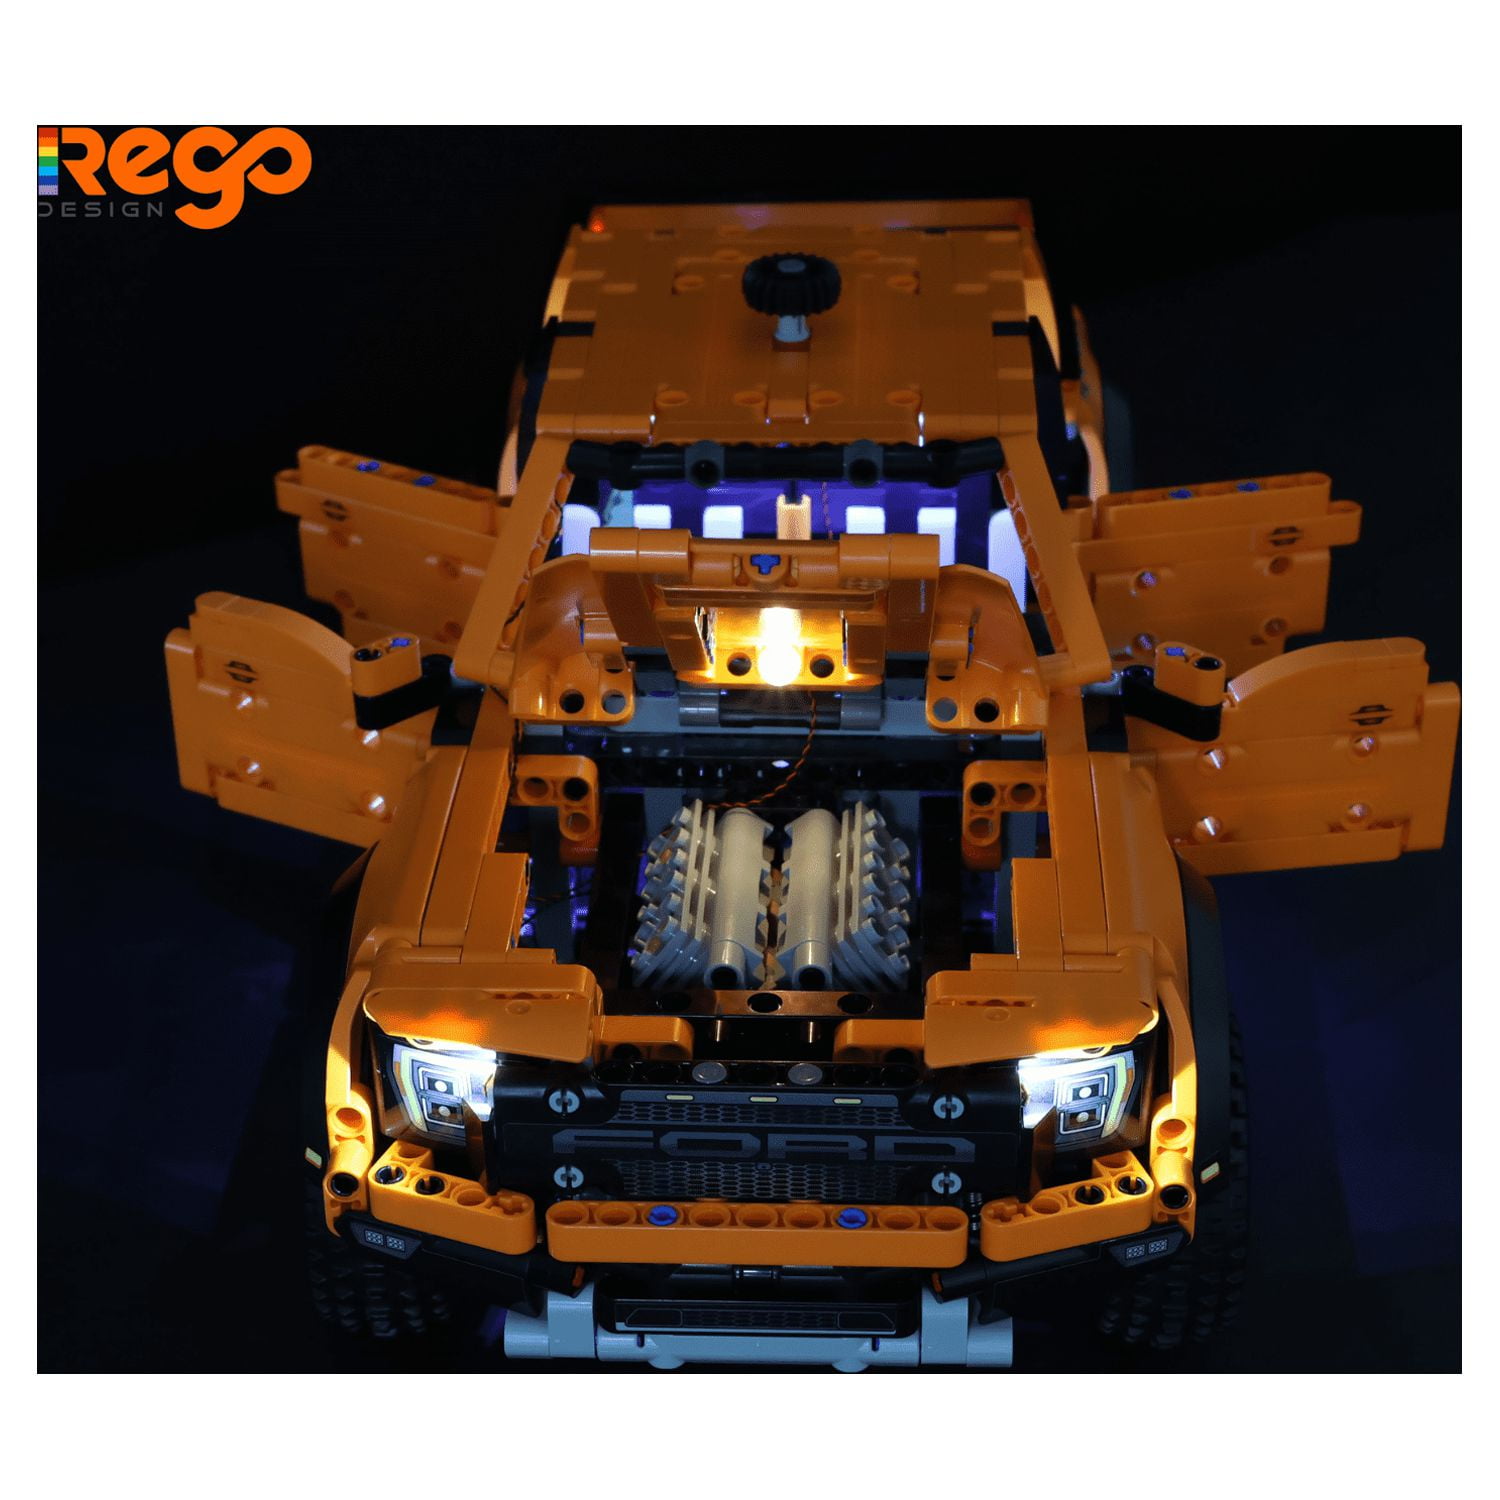 REGO DESIGN LED Creative Lighting Building Kit Set for 42126 Set